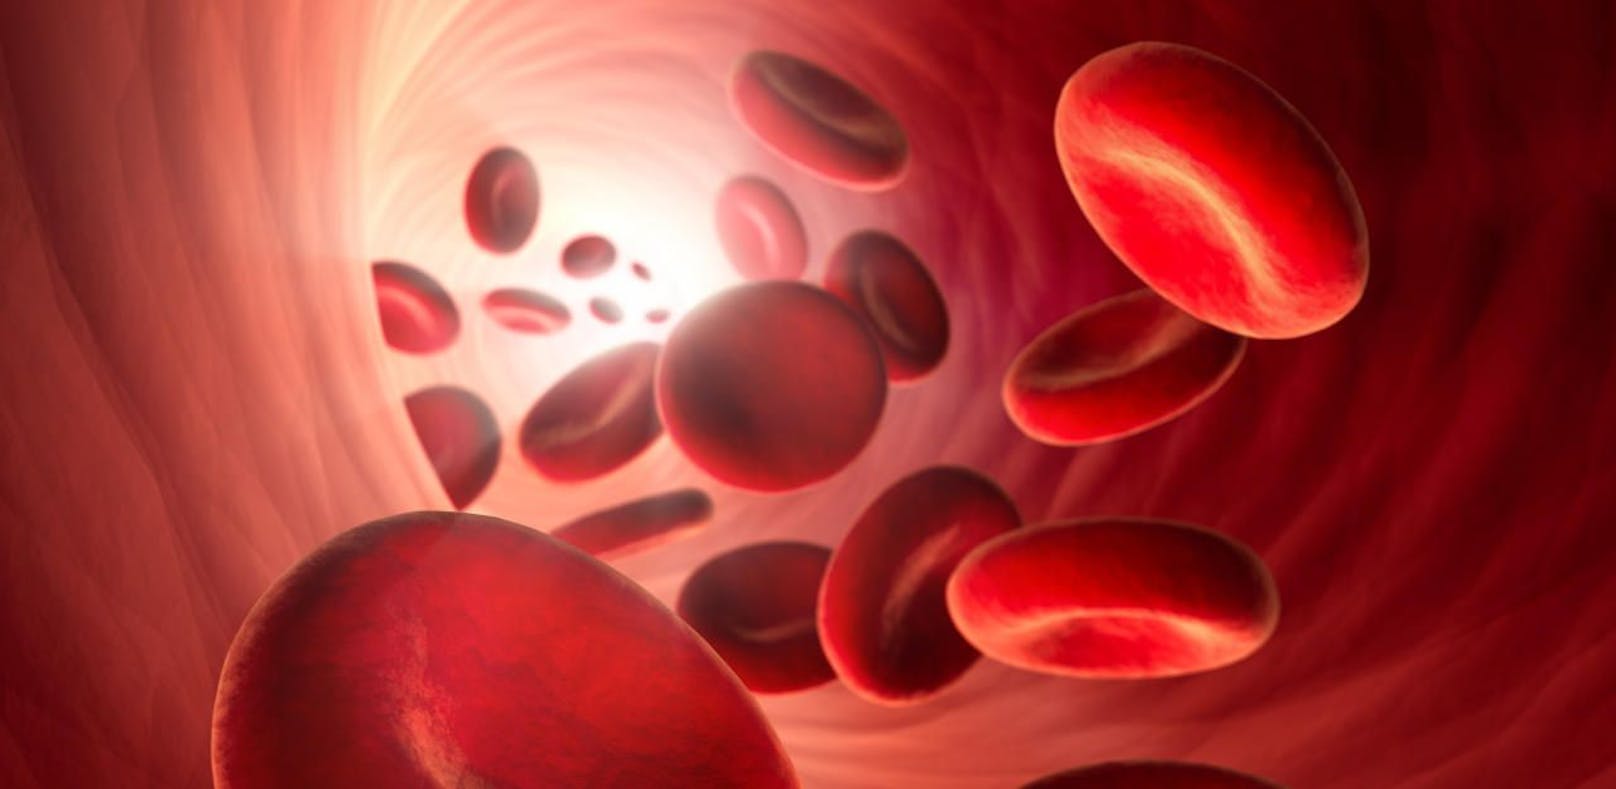 Blut in unserem Körper zirkuliert viel turbulenter als angenommen.